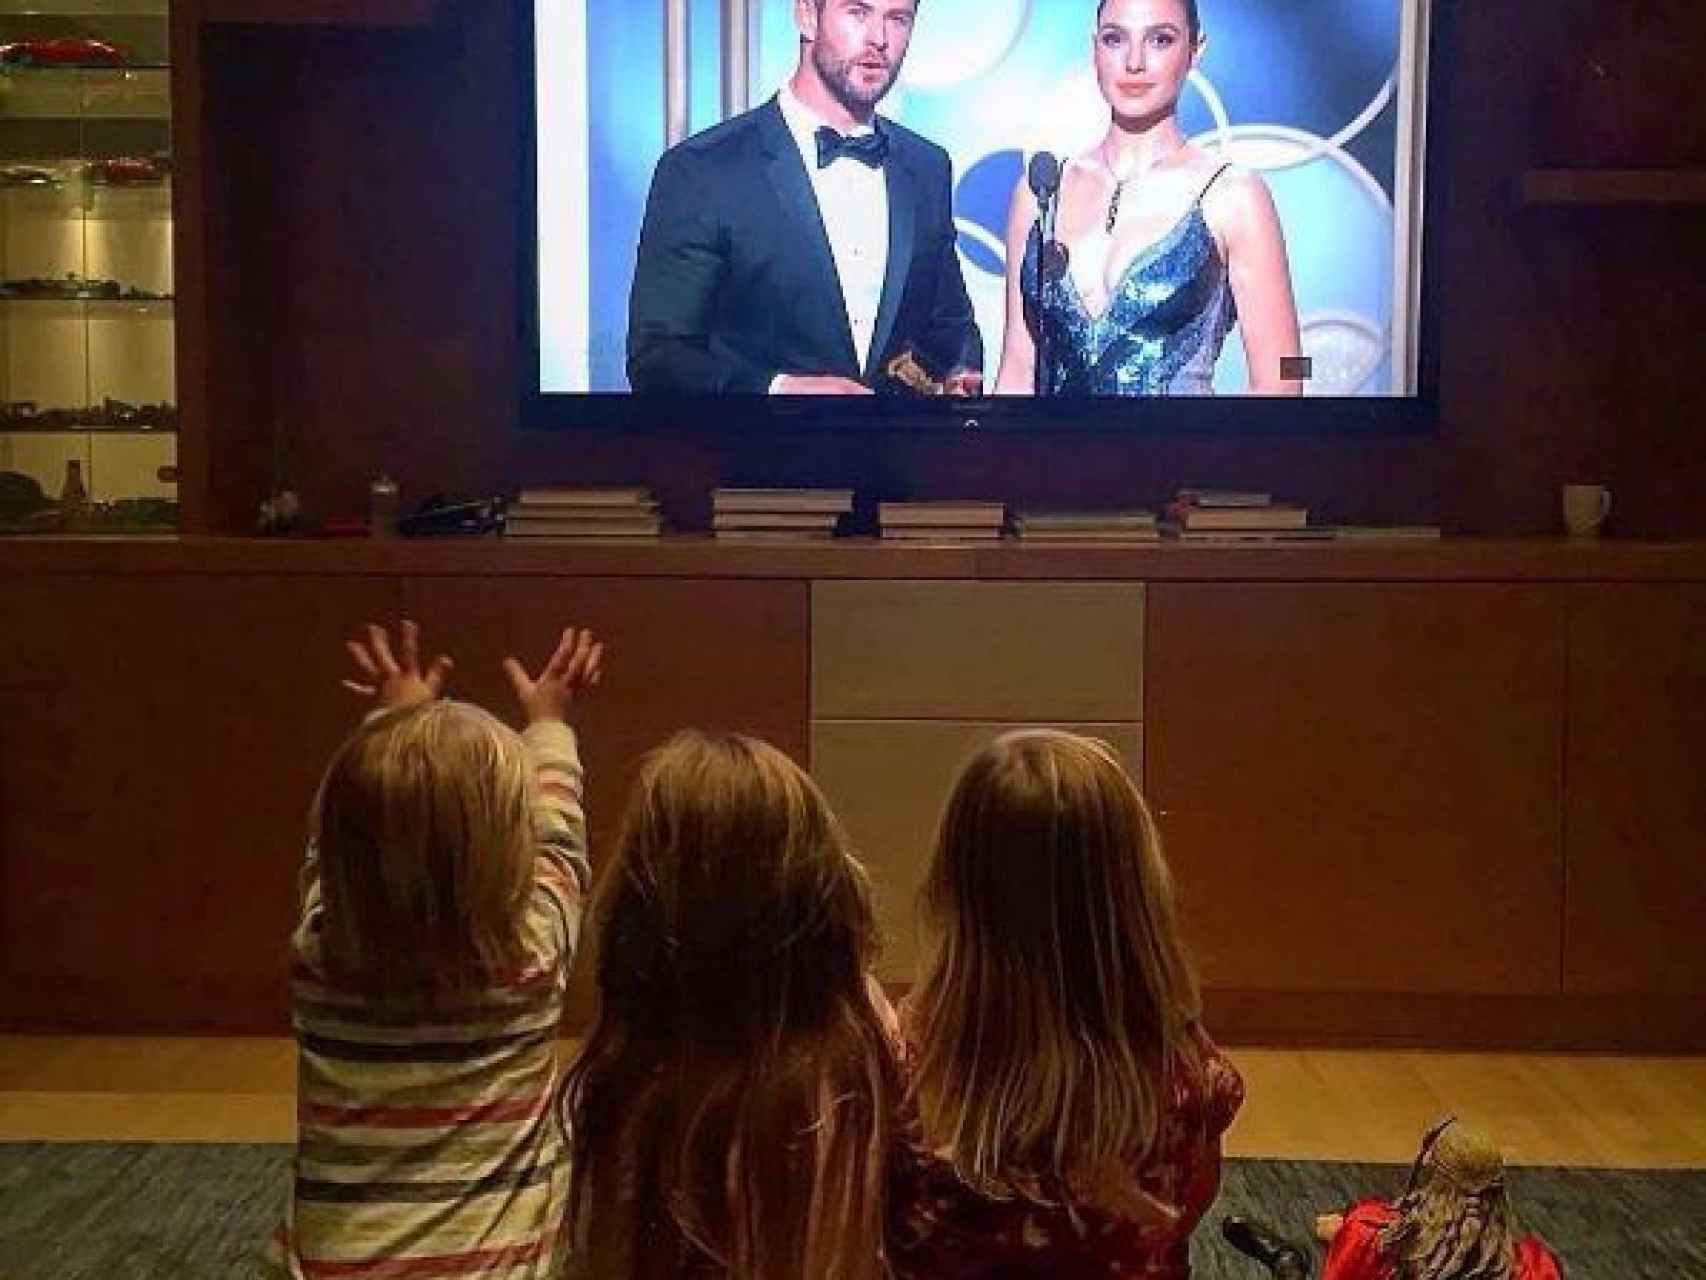 Los tres hijos del matrimonio viendo a su padre en la televisión.